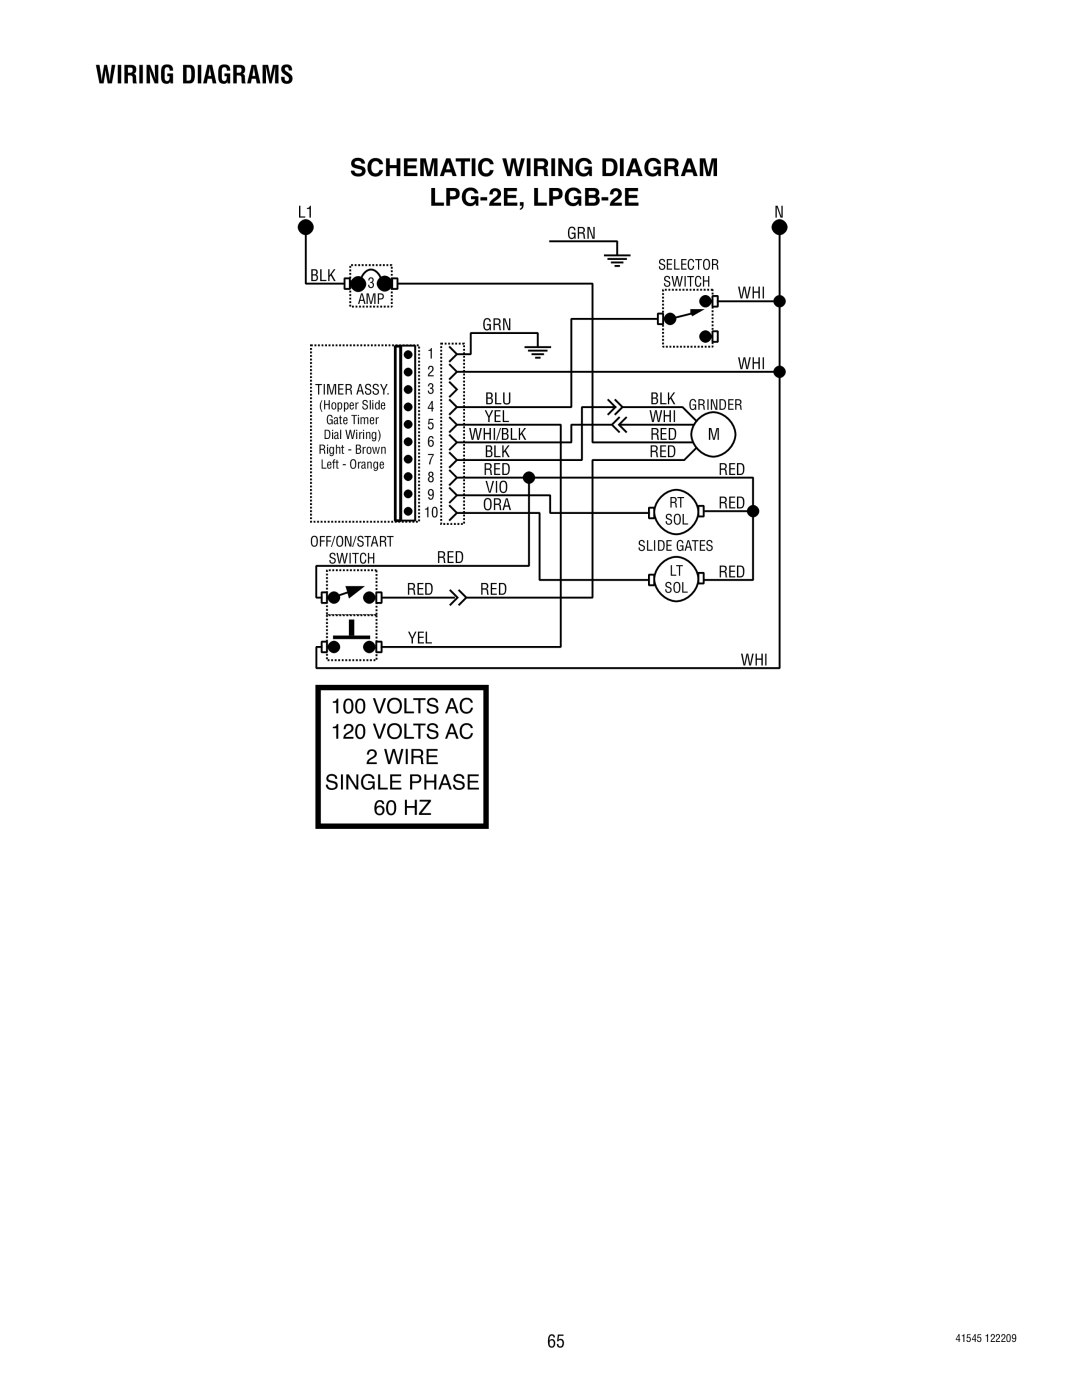 Bunn G9WD Schematic Wiring Diagram, LPG-2E, LPGB-2E, Wiring Diagrams, VOLTS AC 120 VOLTS AC 2 WIRE SINGLE PHASE, 60 HZ 